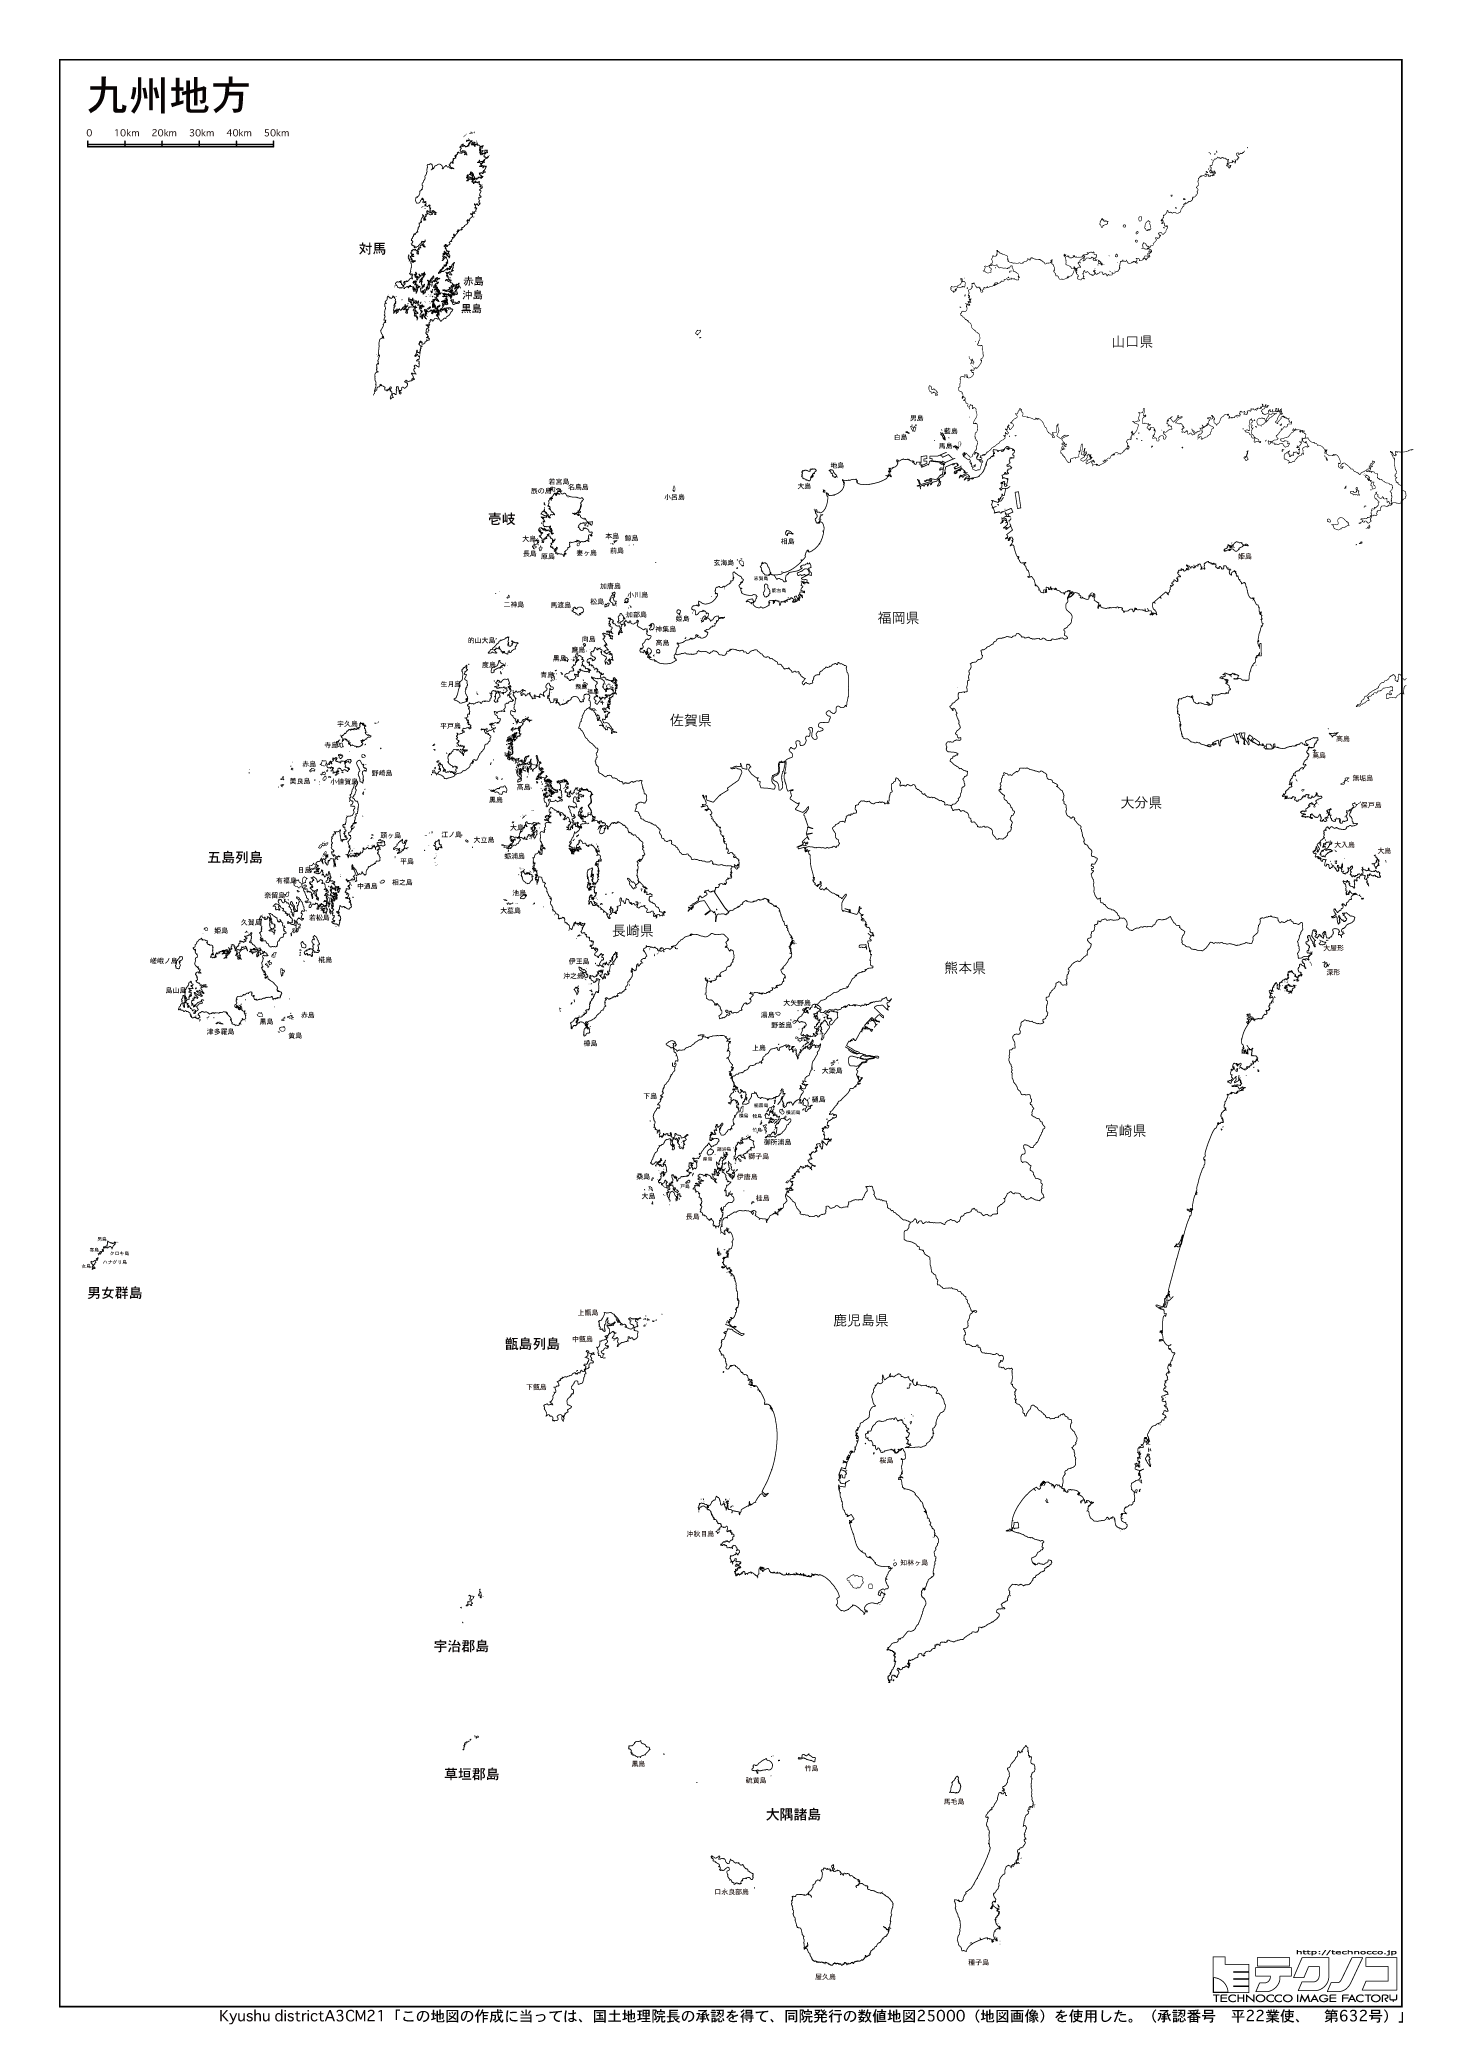 ユニーク白地図 九州 最高の花の画像